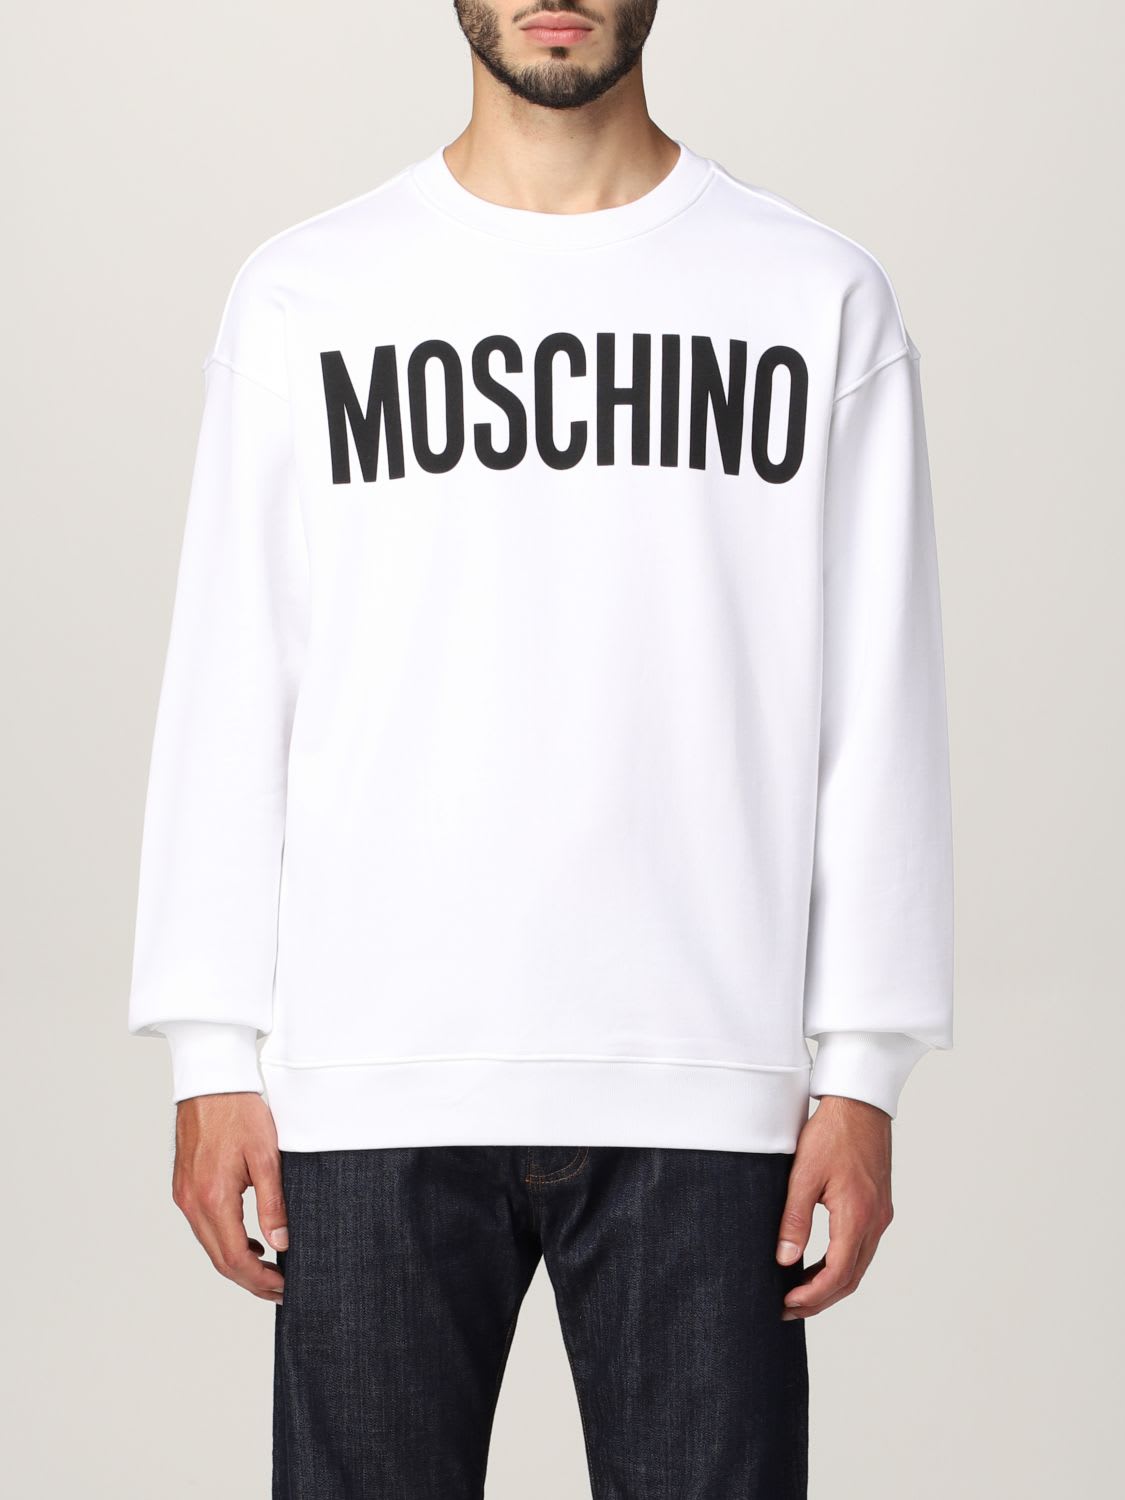 Moschino Couture Sweatshirt Moschino Couture Cotton Sweatshirt